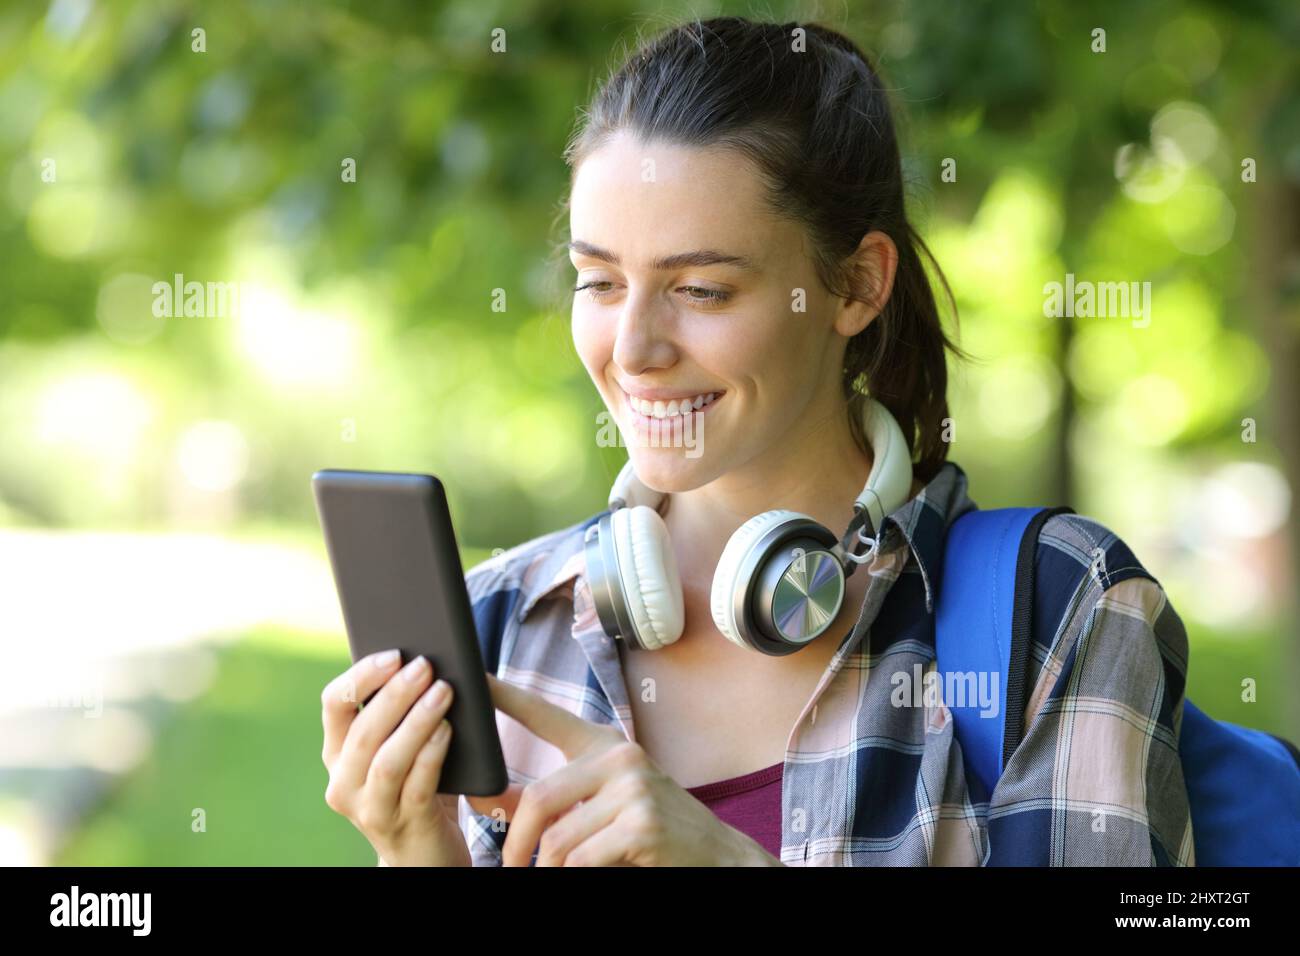 Glücklicher Student, der Smartphone benutzt, der in einem grünen Park oder auf dem Campus läuft Stockfoto